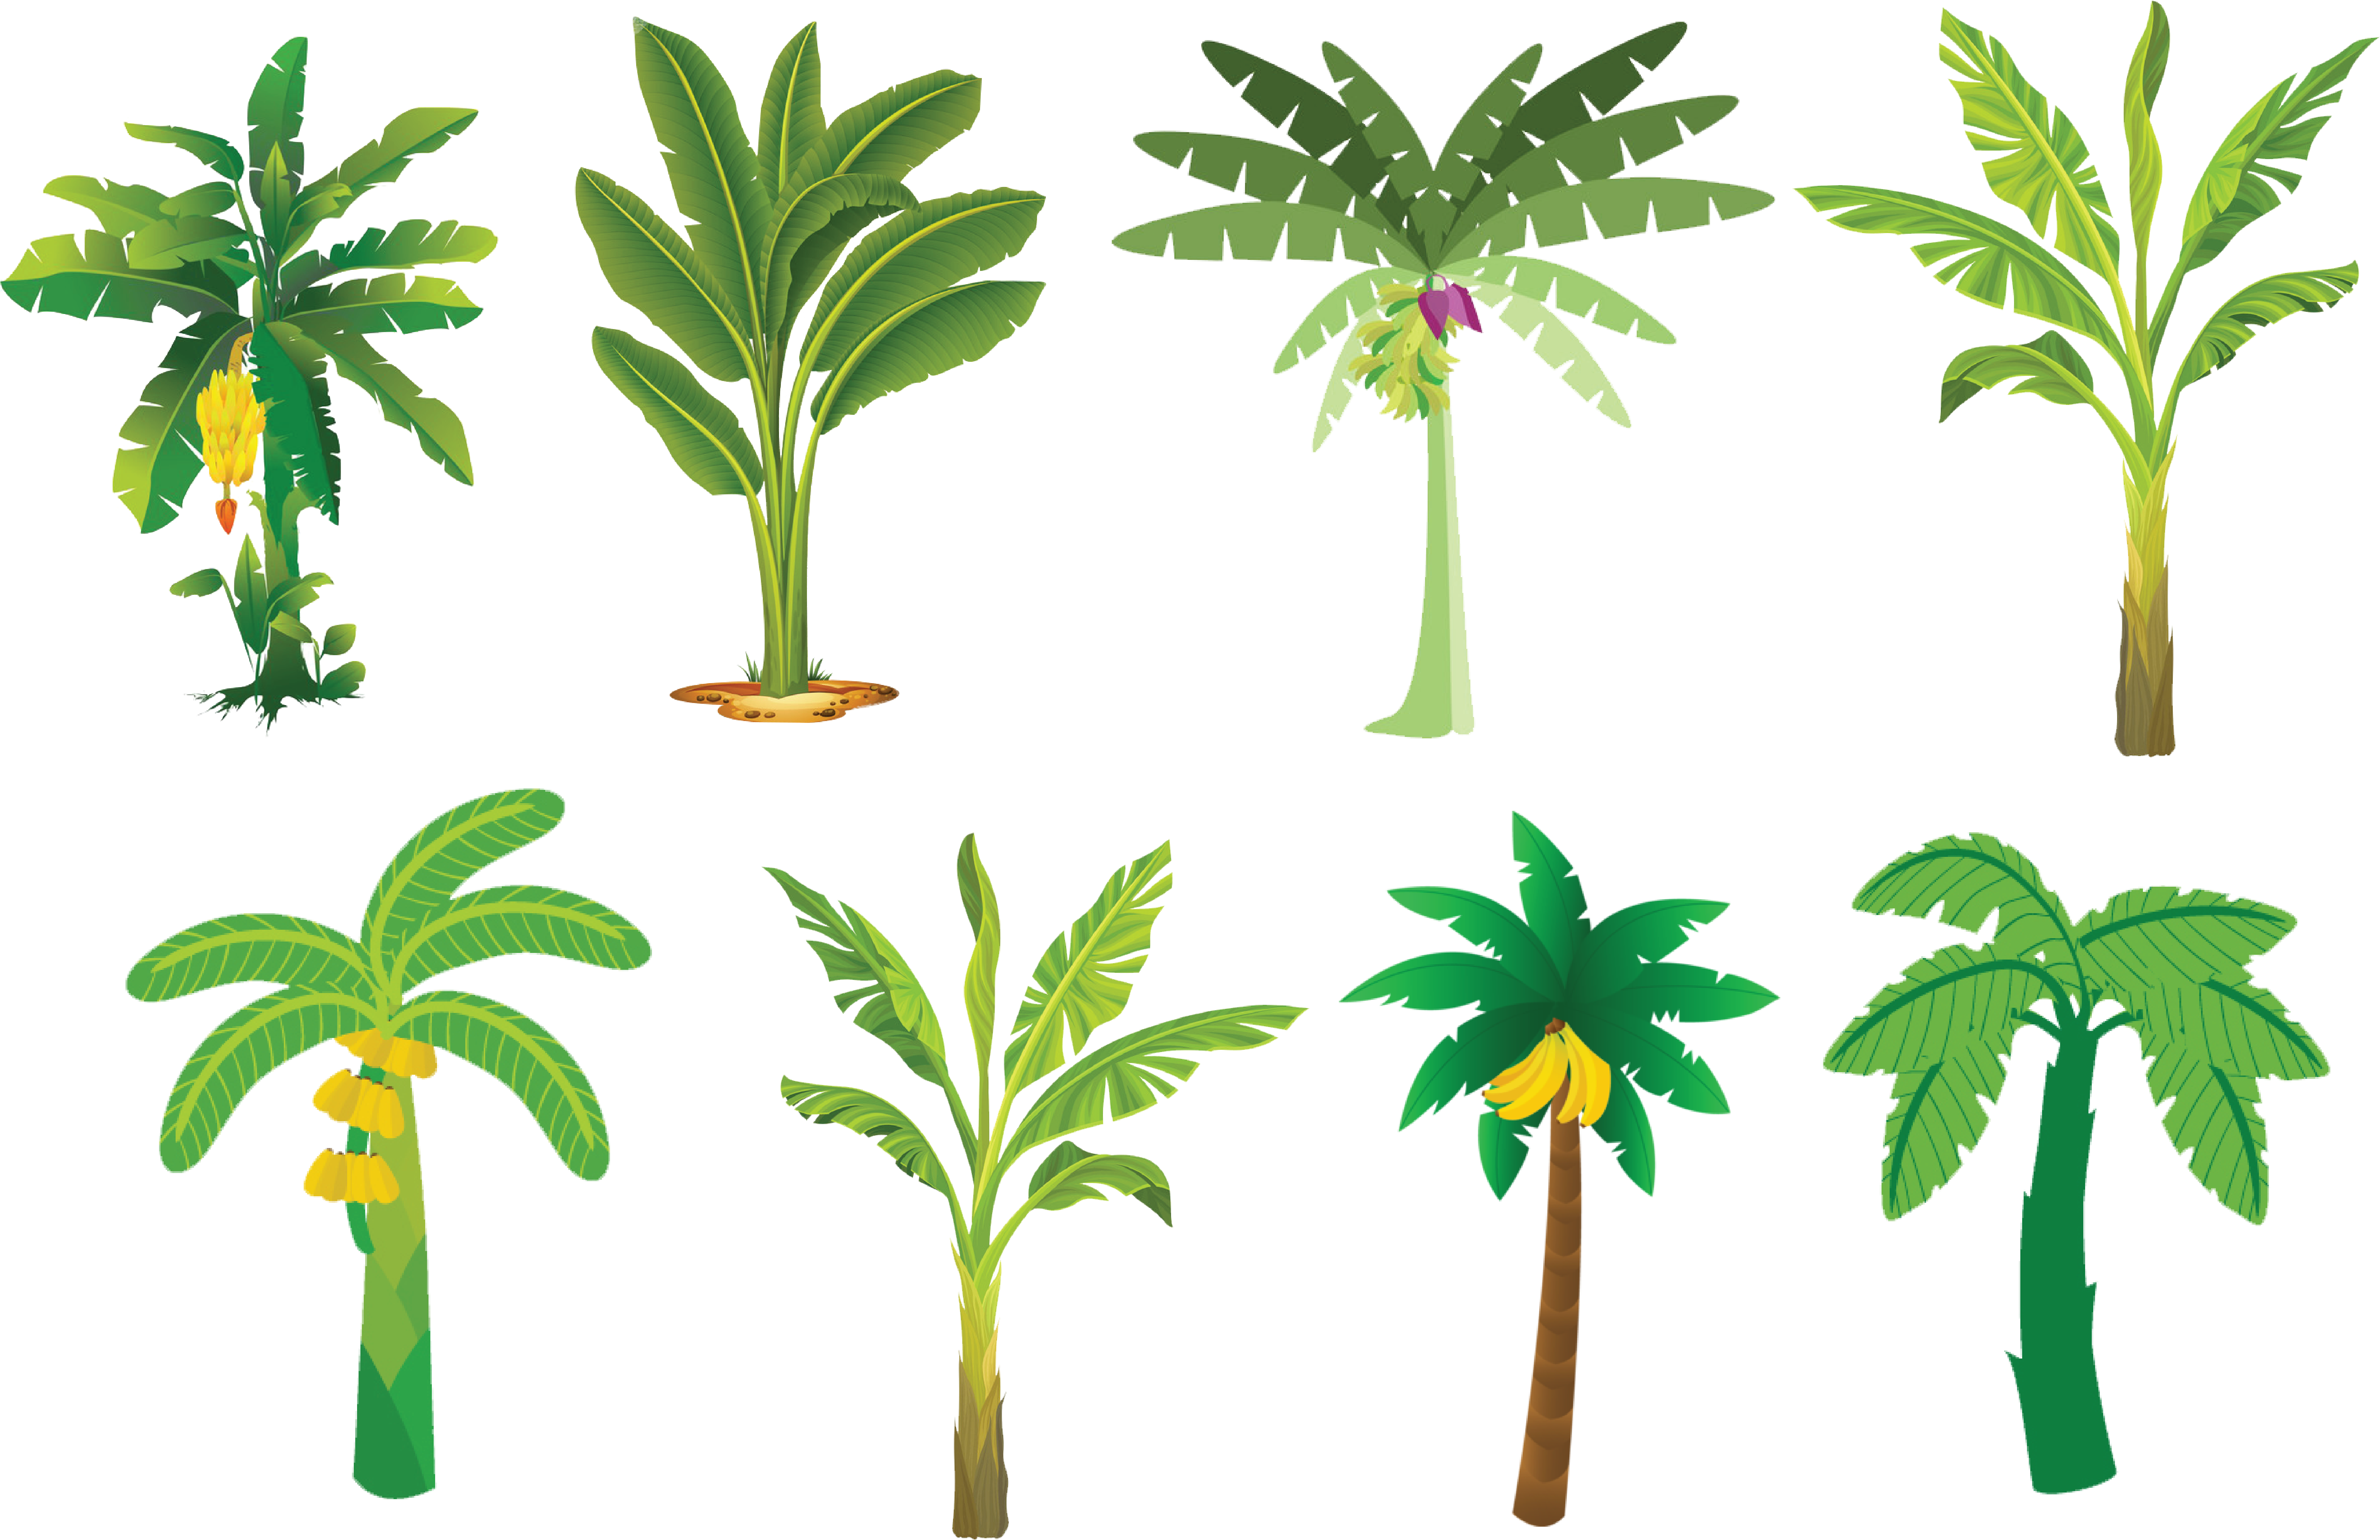 Varietyof Banana Trees Illustration PNG